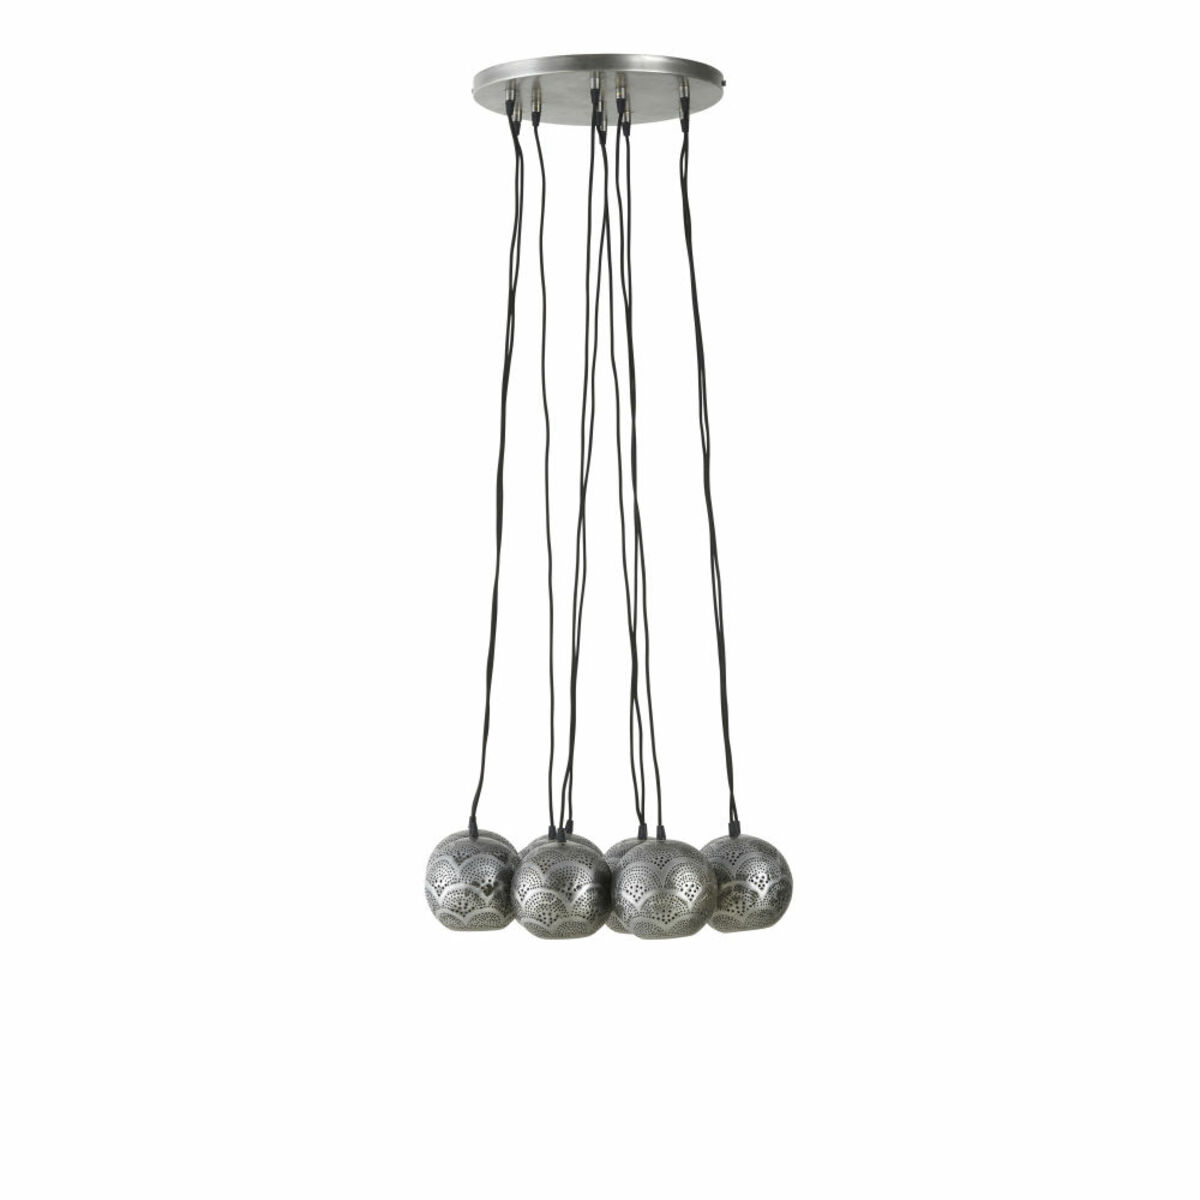 Lámpara de techo con 10 bolas de metal cepillado y motivos decorativos perforados